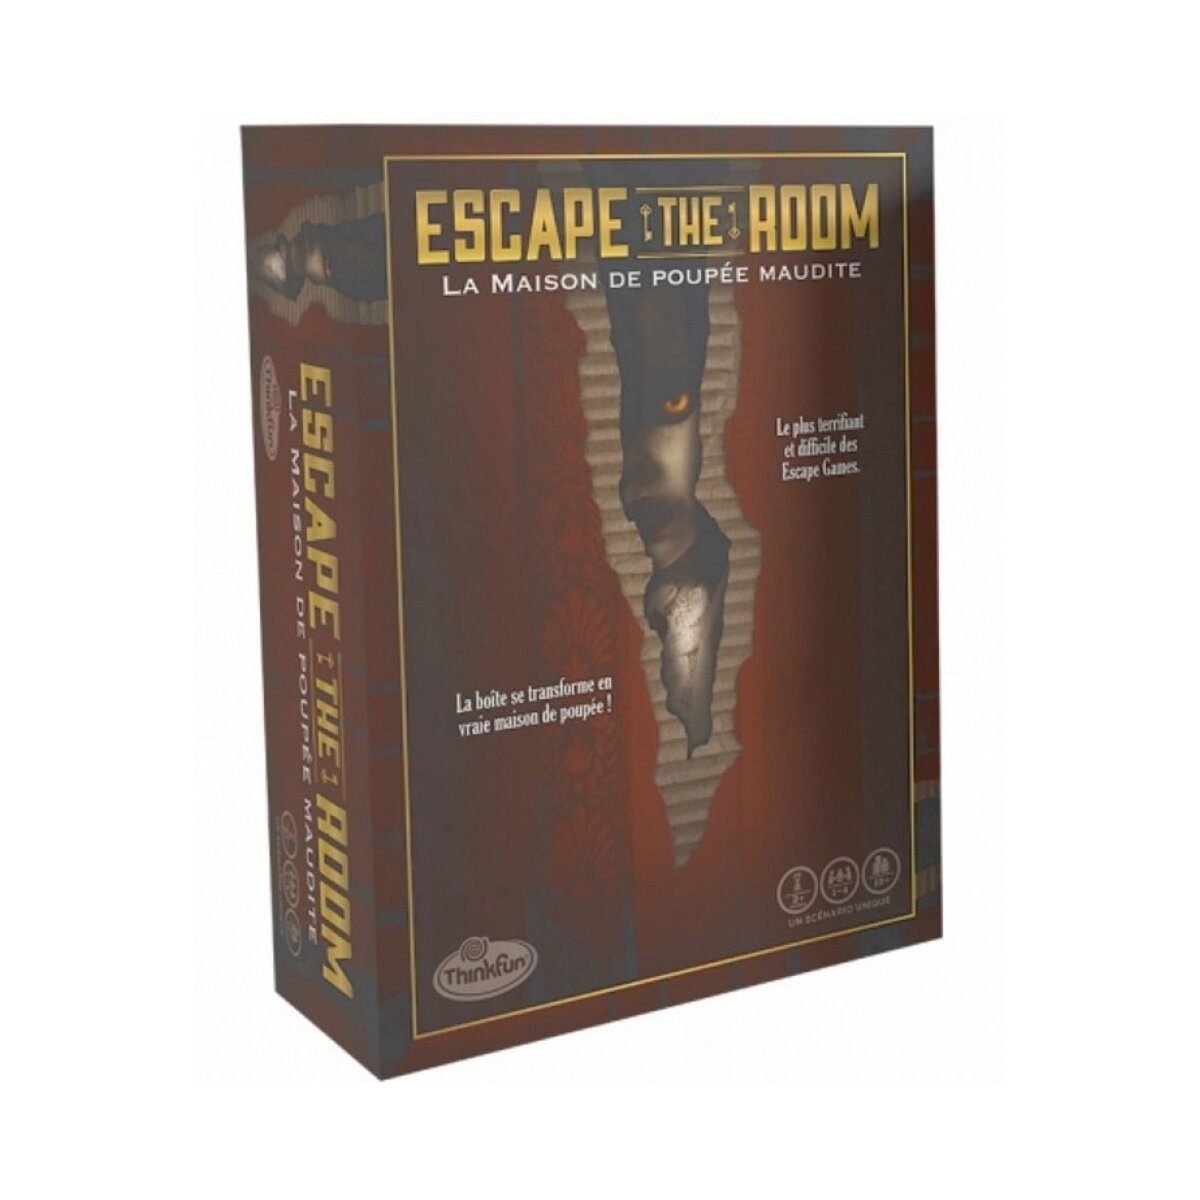 RAVENSBURGER Escape The Room La Maison de poupee maudite